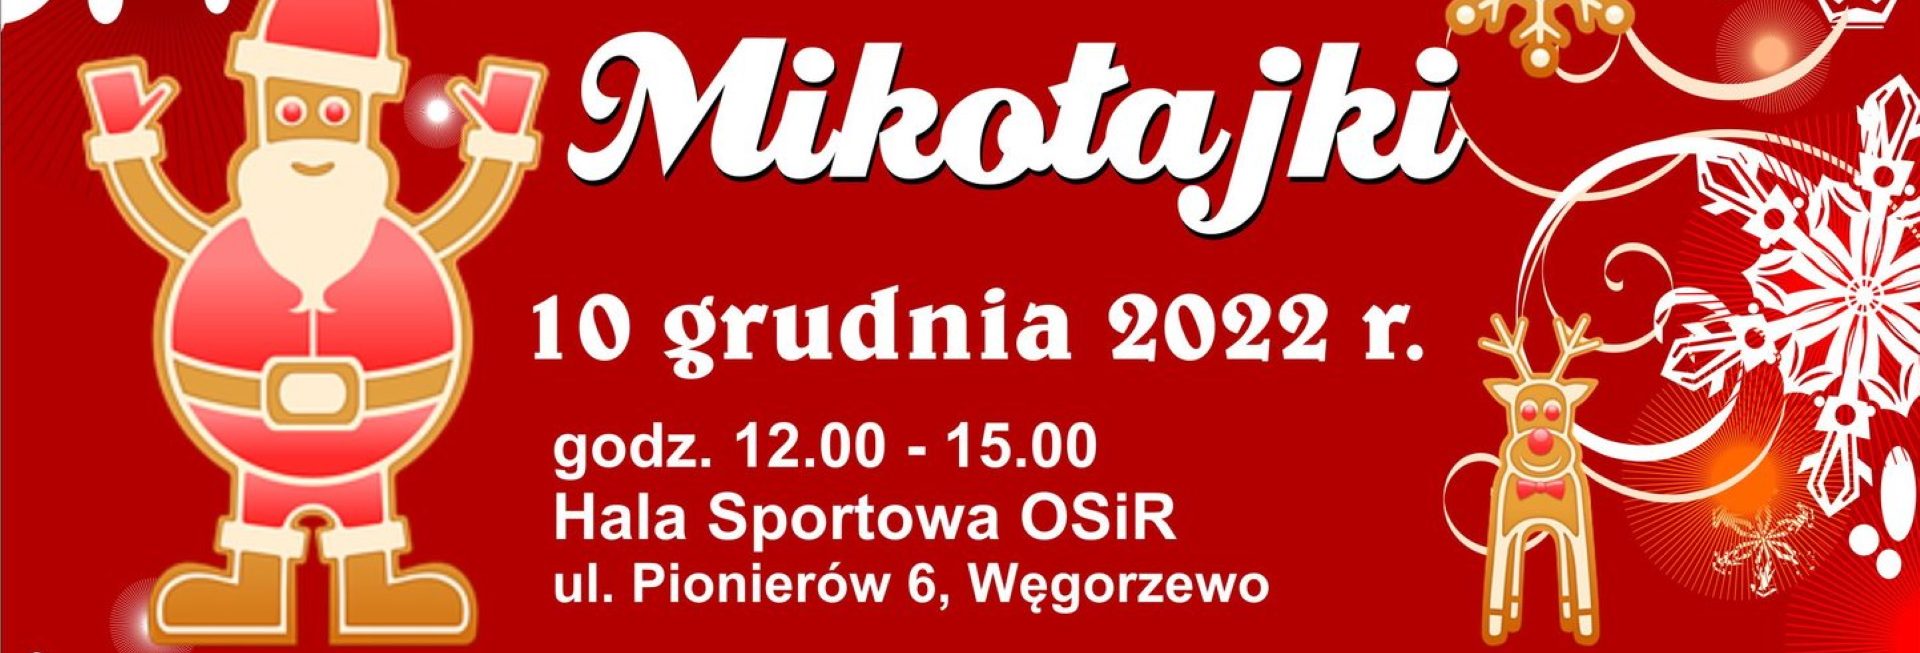 Plakat zapraszający do Węgorzewa na kolejną edycję Mikołajek w Węgorzewie 2022.